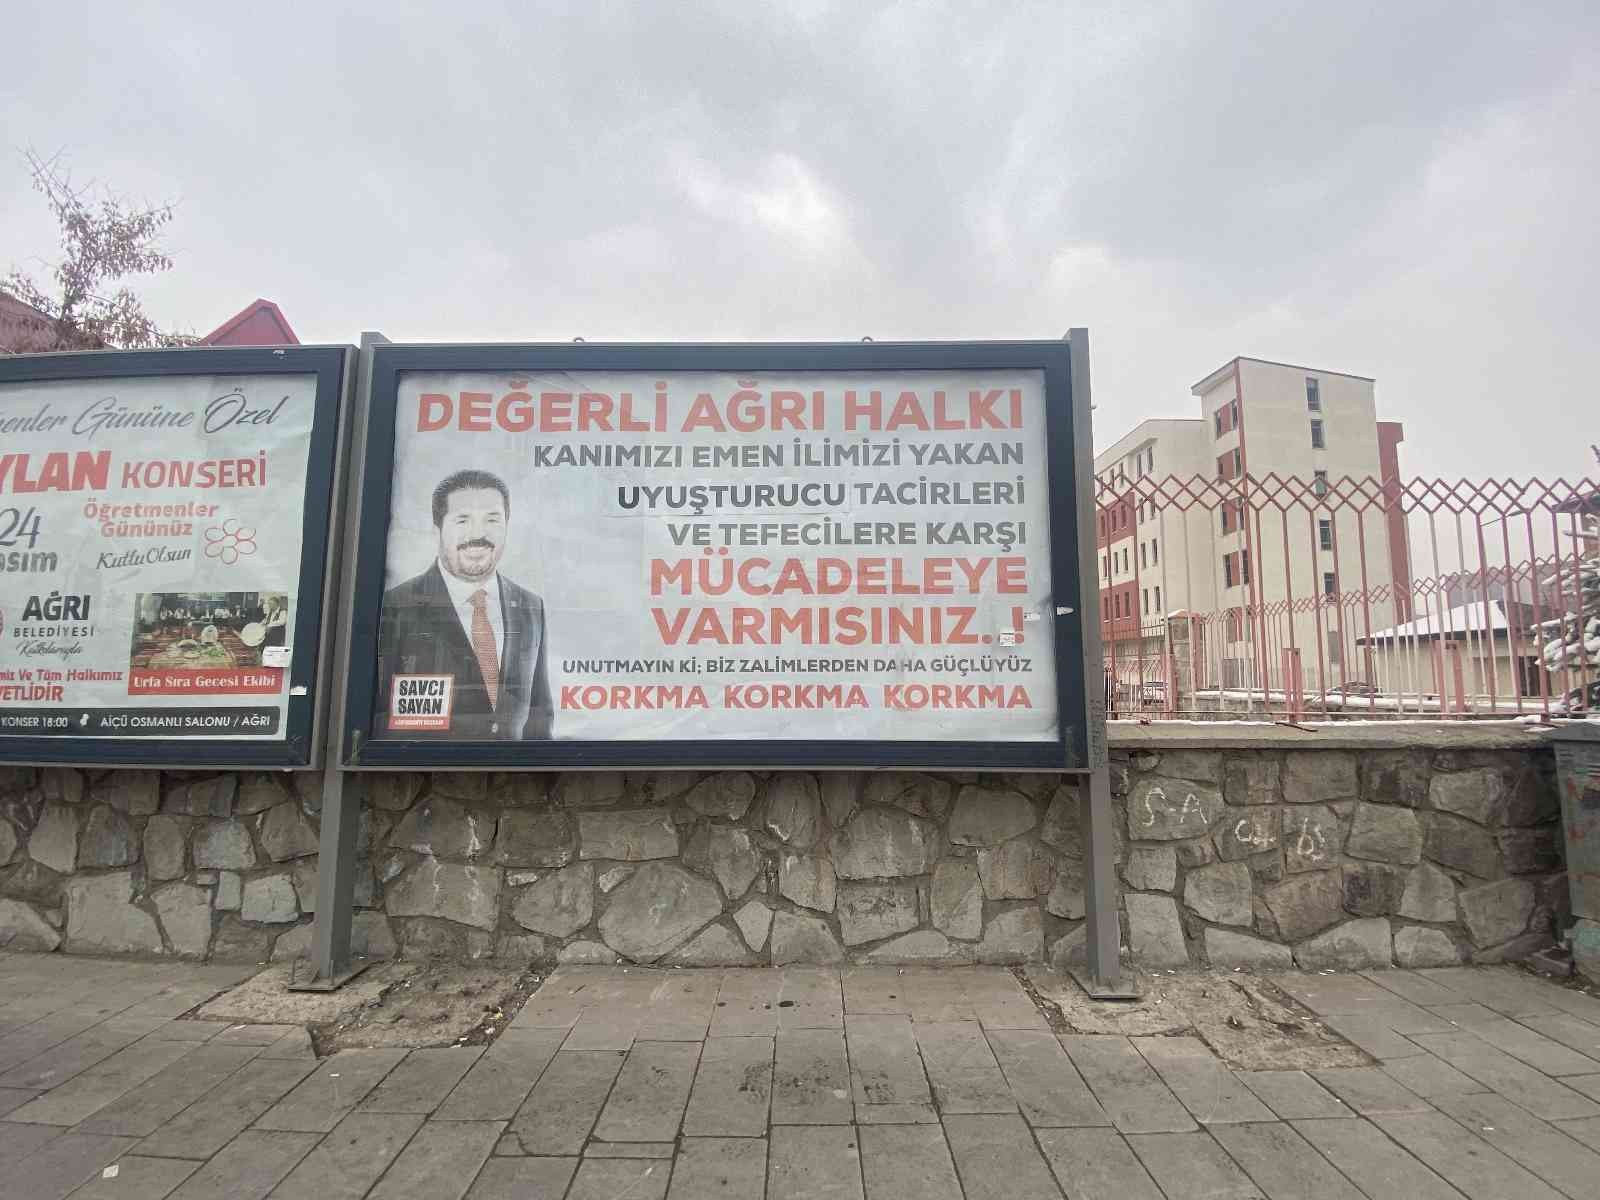 Başkan Sayan, uyuşturucu ile mücadeleye dikkat çekmek için afişler astırdı #agri